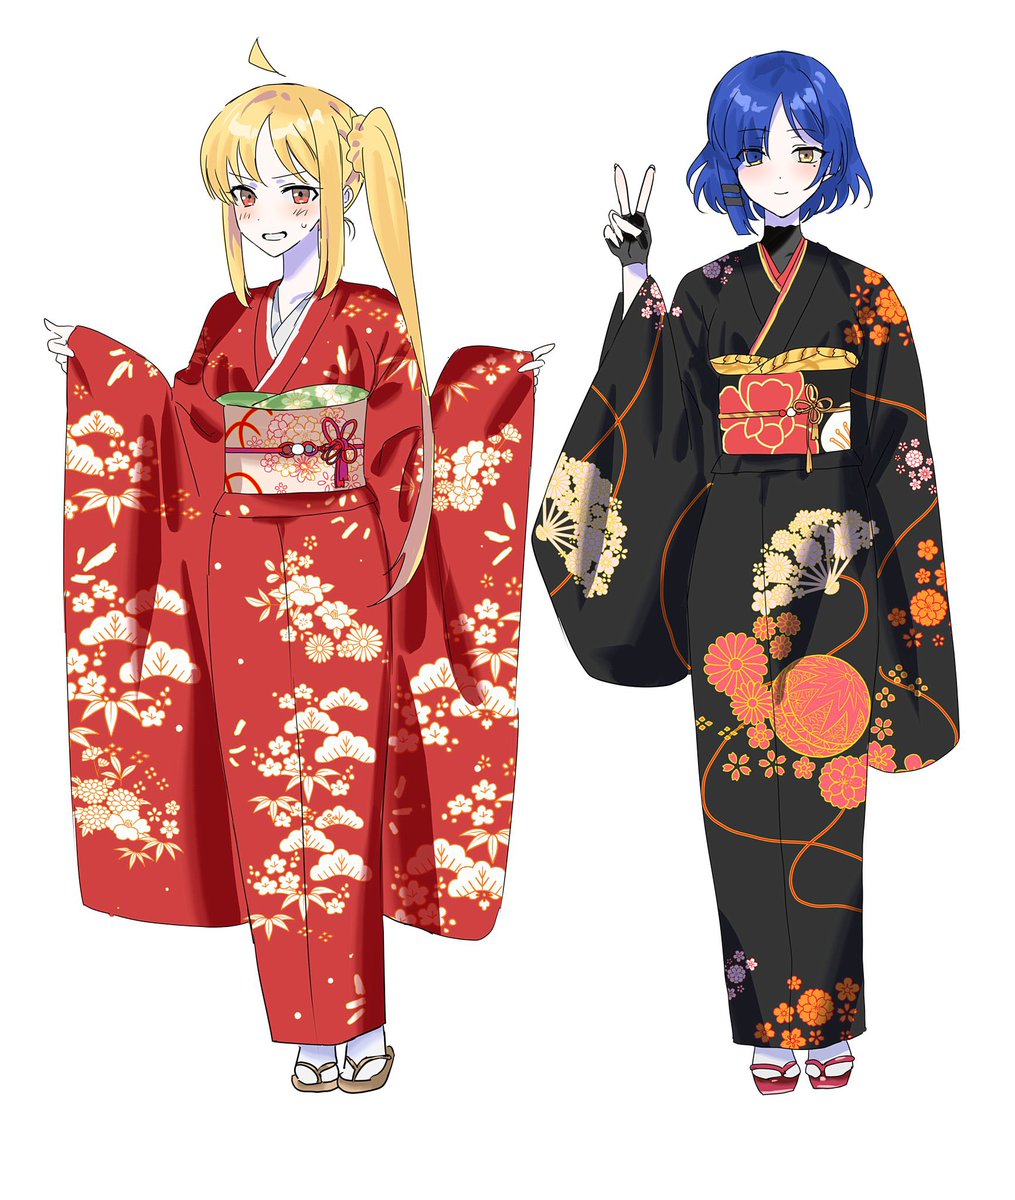 ijichi nijika ,yamada ryo multiple girls 2girls kimono japanese clothes blonde hair blue hair side ponytail  illustration images